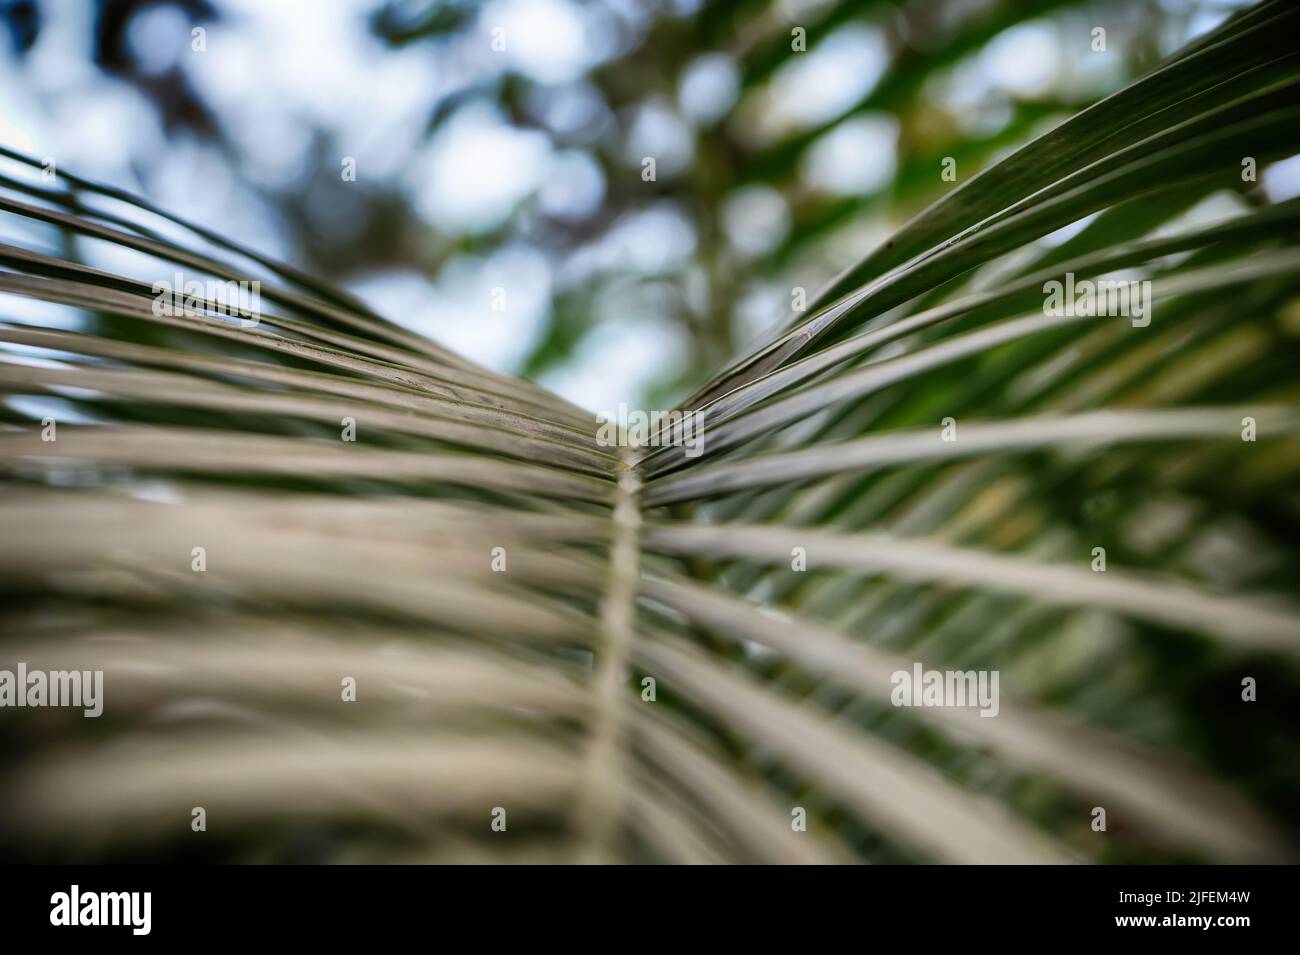 Hinterlässt einen texturellen Hintergrund für Desktop- und mobile Haut. Ast-Handfläche. Blätter und Zweige von Palmen. Tropischer Blatthintergrund. Grünes Laub. Stockfoto